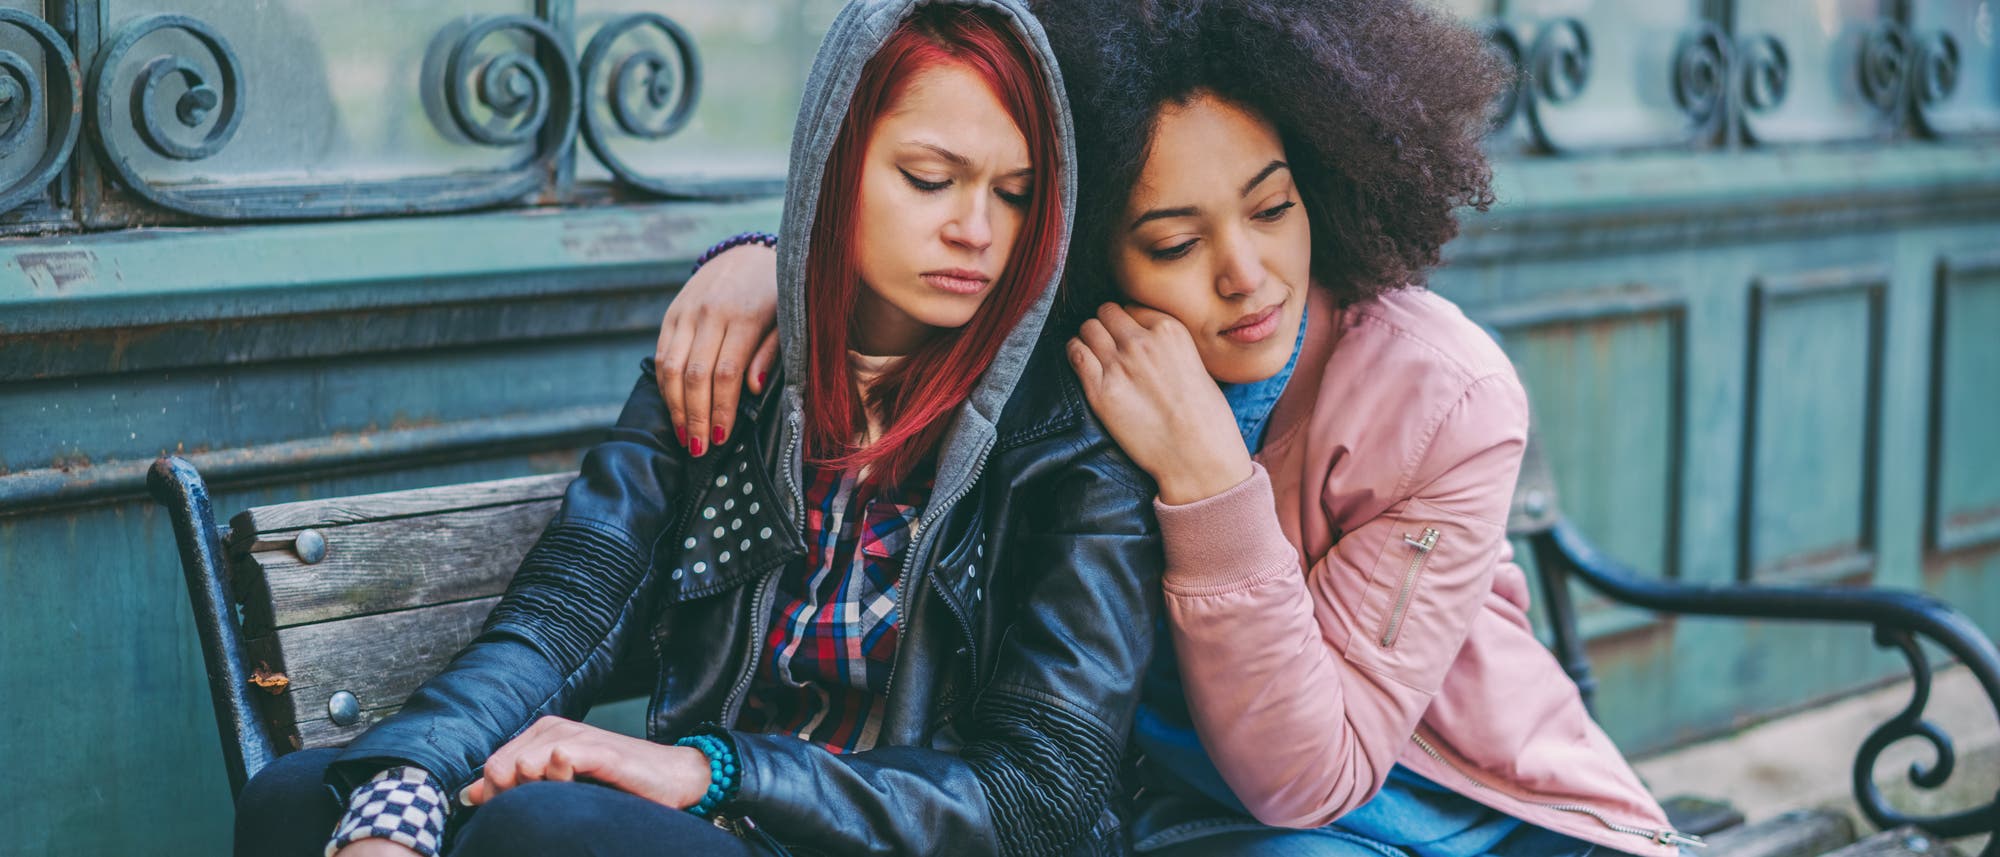 Zwei junge Frauen spenden einander Trost. Die Frau links trägt eine schwarze Lederjacke und hat rot getönte Haare, die Frau rechts trägt einen rosa gefärbten Pullover, blaue Jeans und hat dunkle Locken. Beide sitzen auf einer Bank.